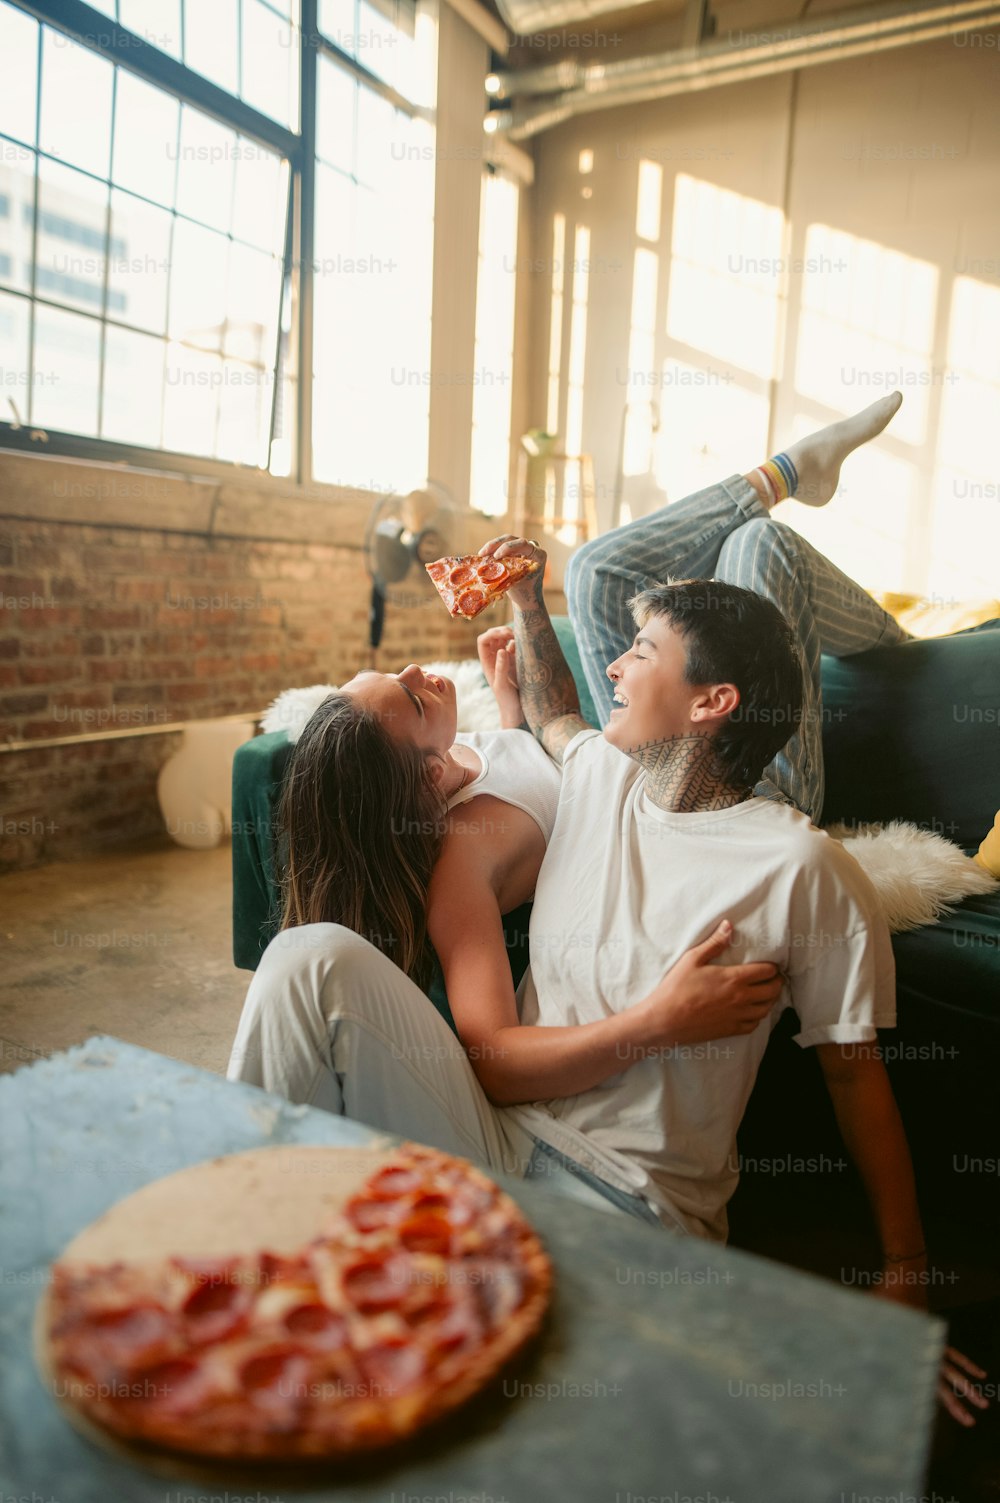 Ein Mann und eine Frau sitzen auf einer Couch und essen Pizza